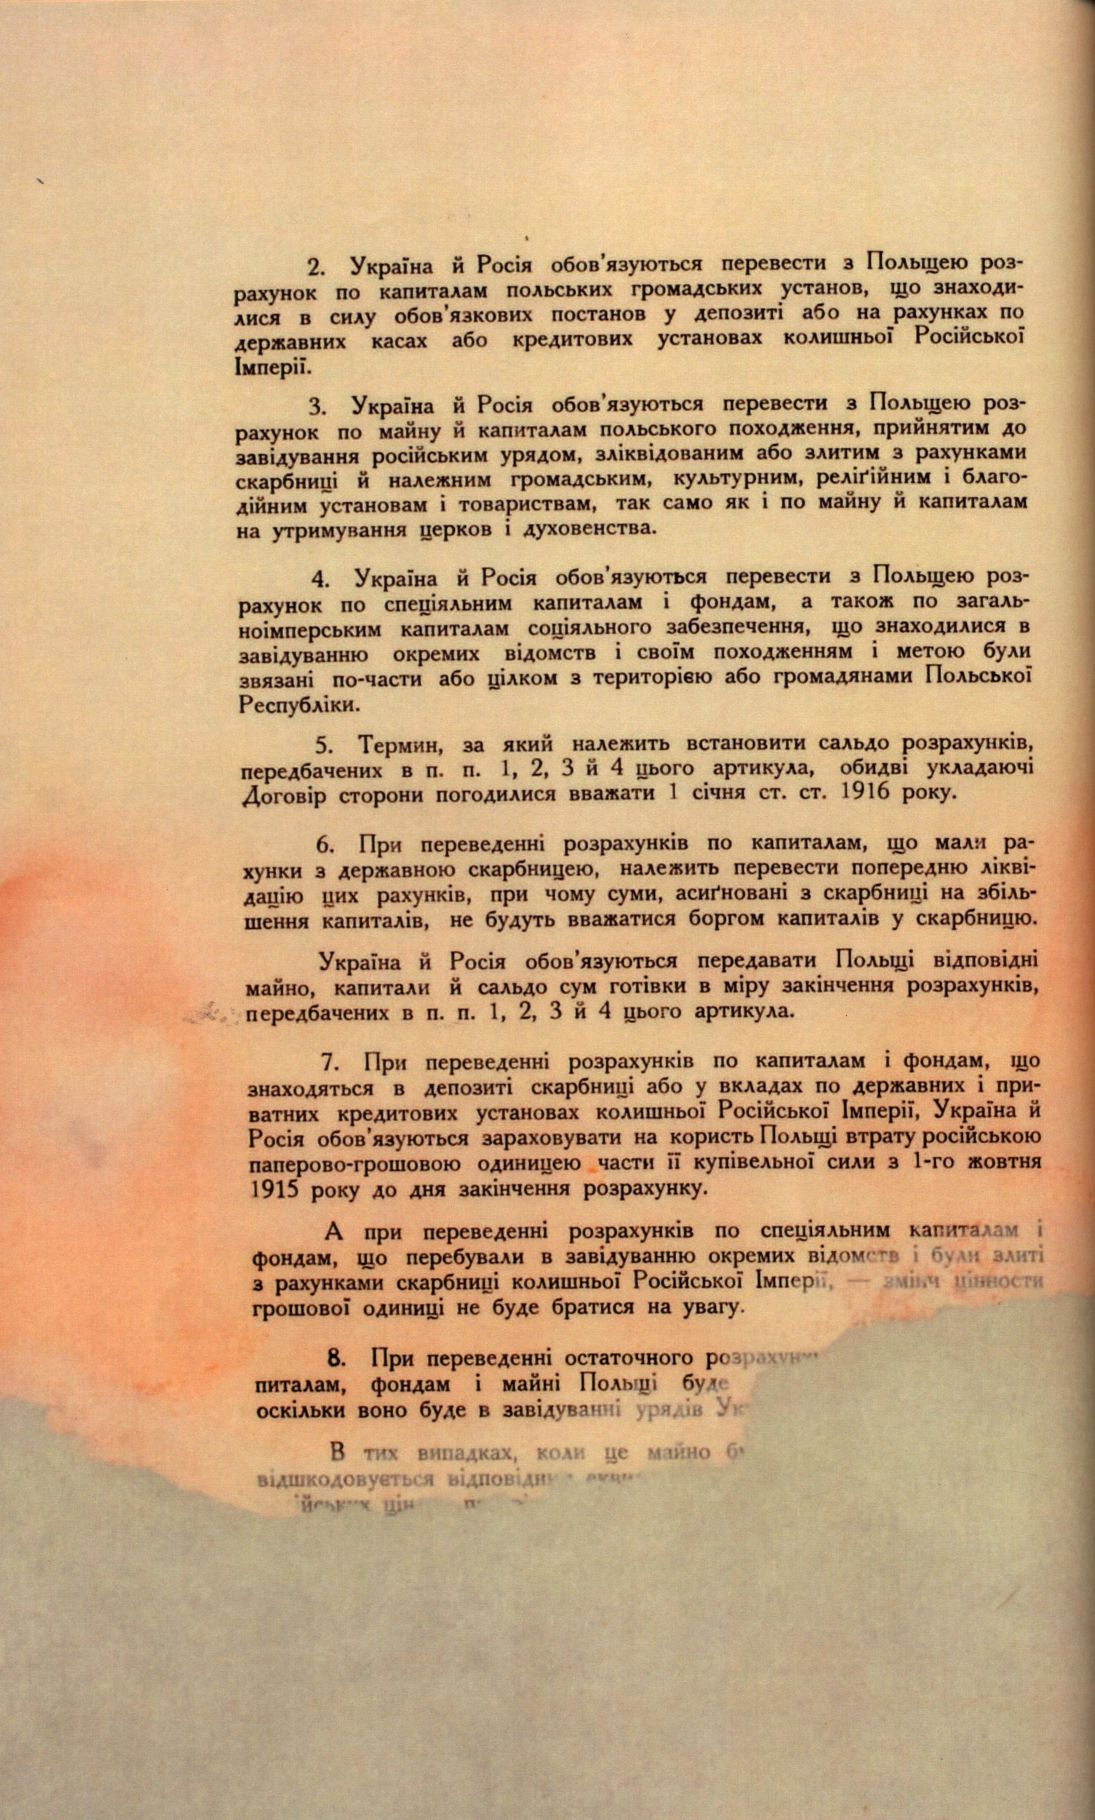 Traktat Pokoju między Polską a Rosją i Ukrainą podpisany w Rydze dnia 18 marca 1921 roku, s. 50, MSZ, sygn. 6739.